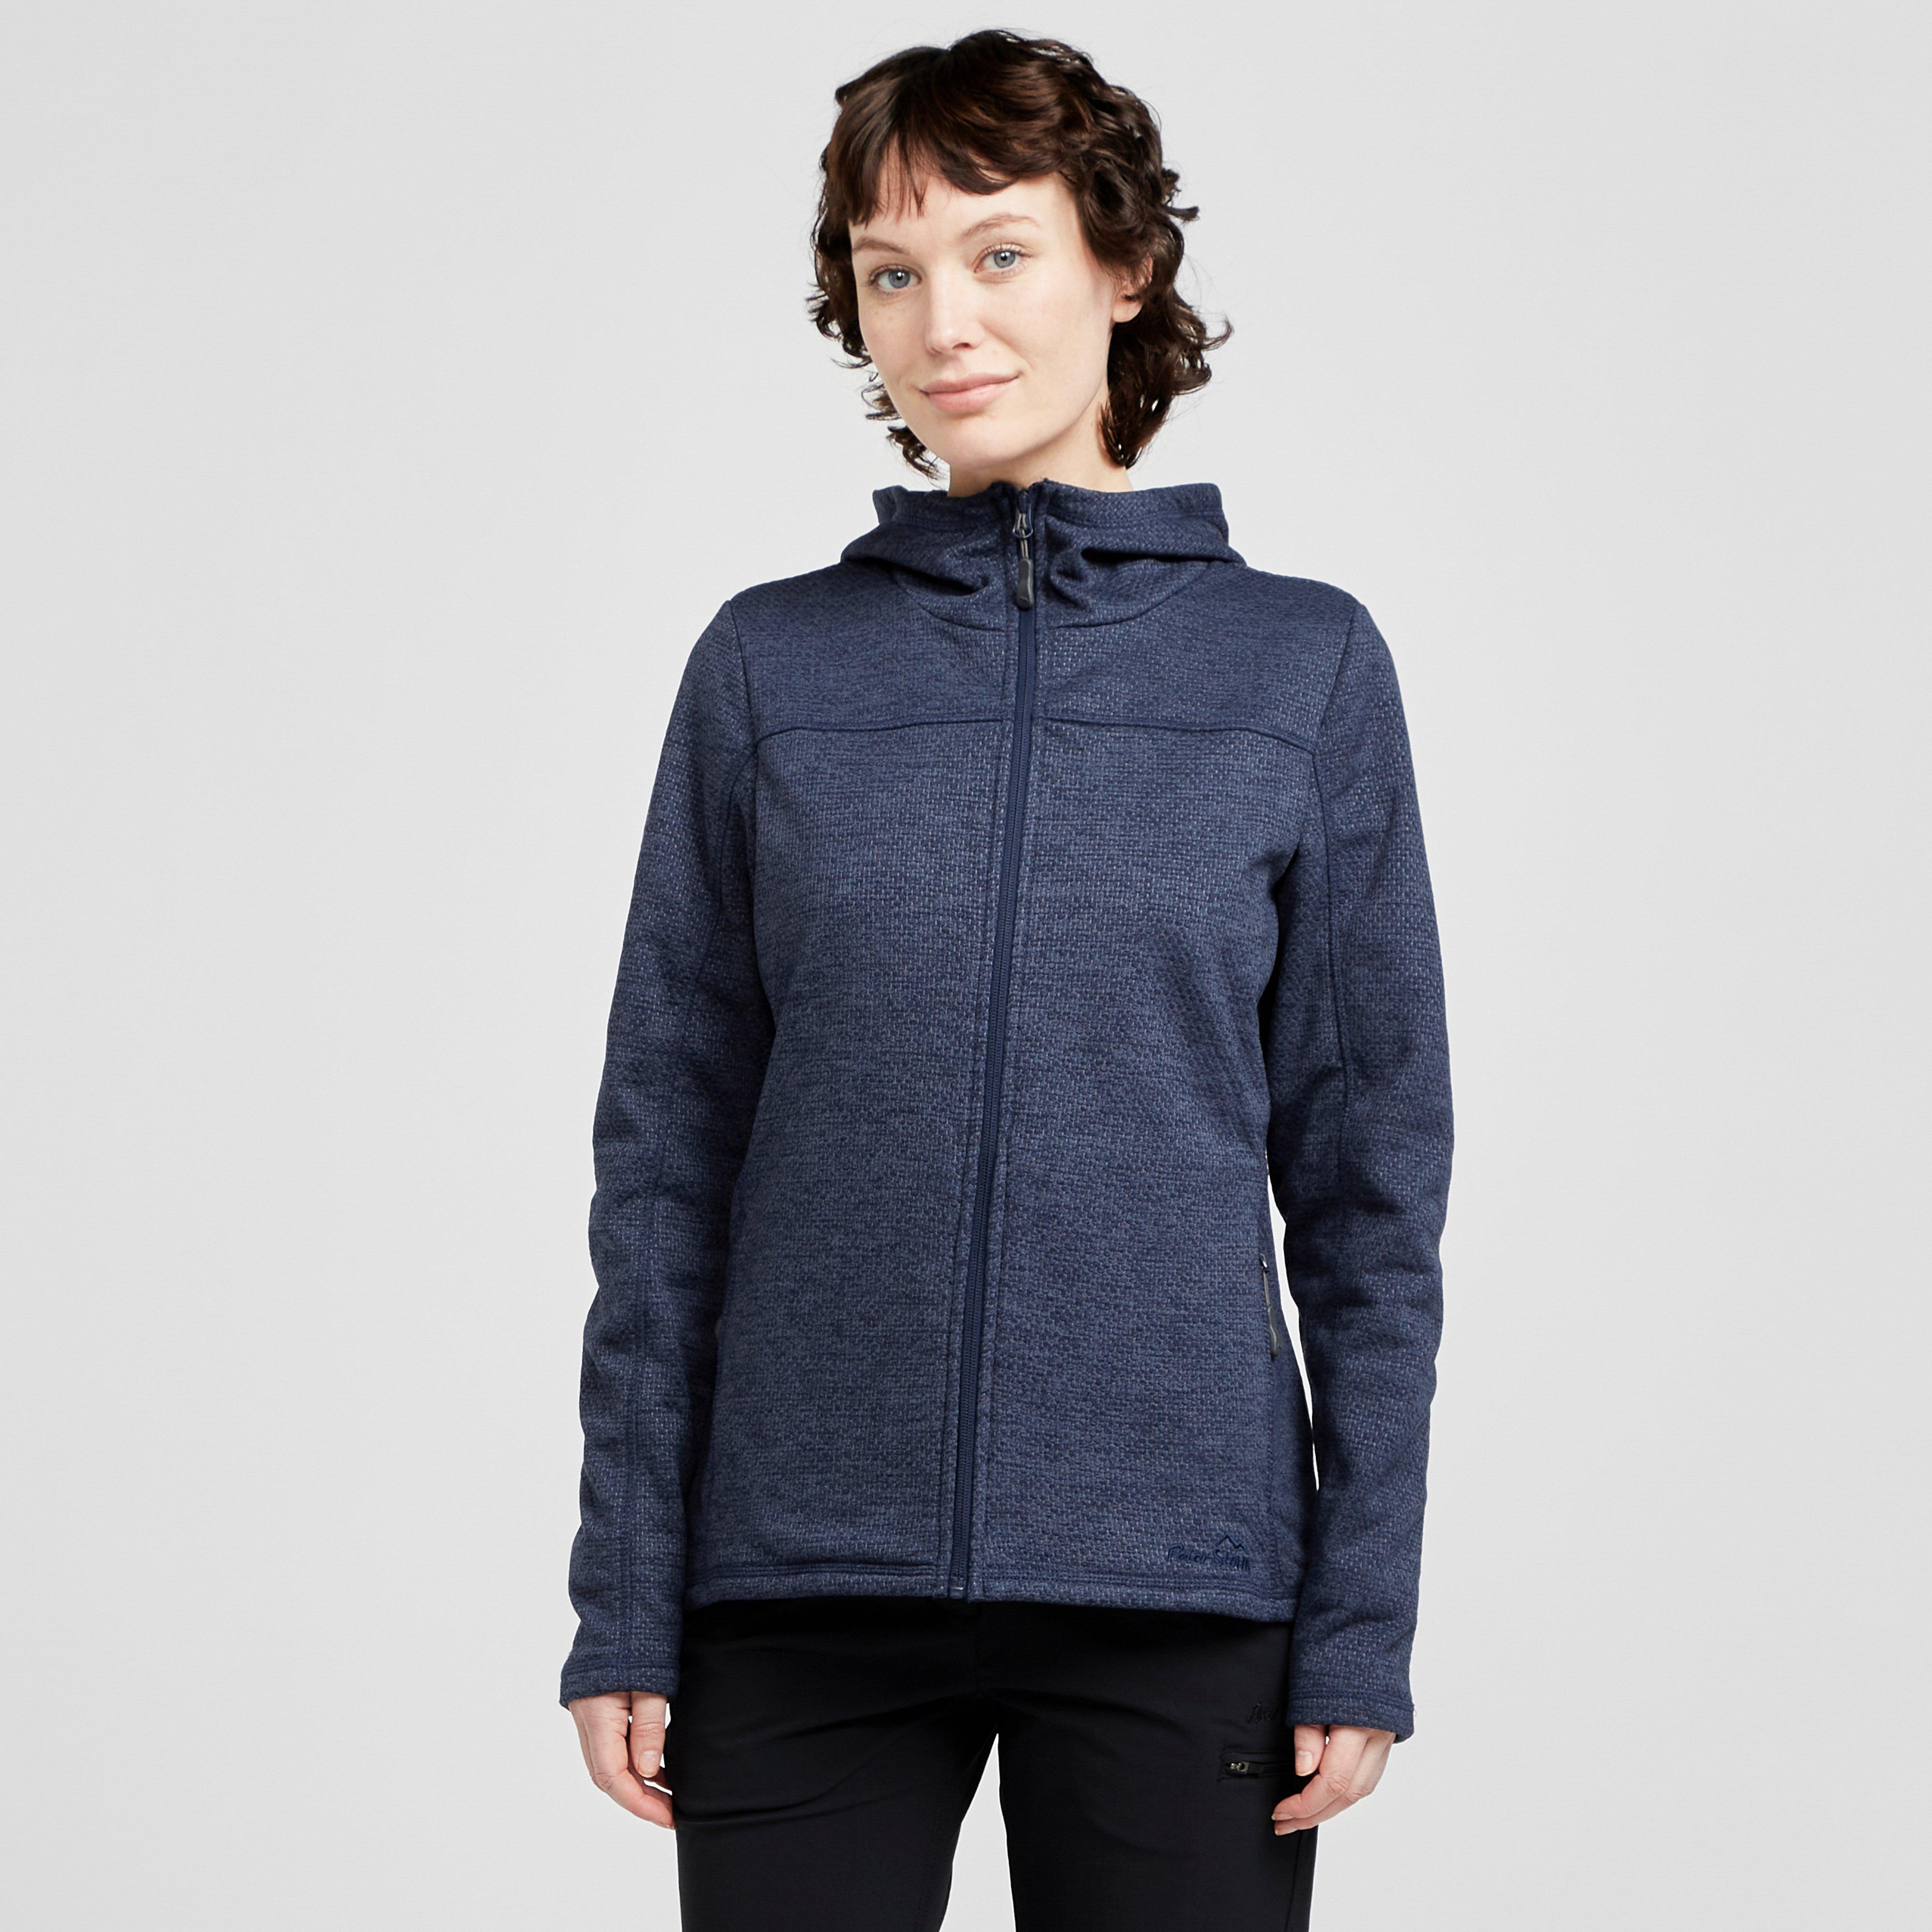 Image of Peter Storm Women's Source Full-Zip Fleece - Navy Blue/Navy Blue, Navy Blue/Navy Blue